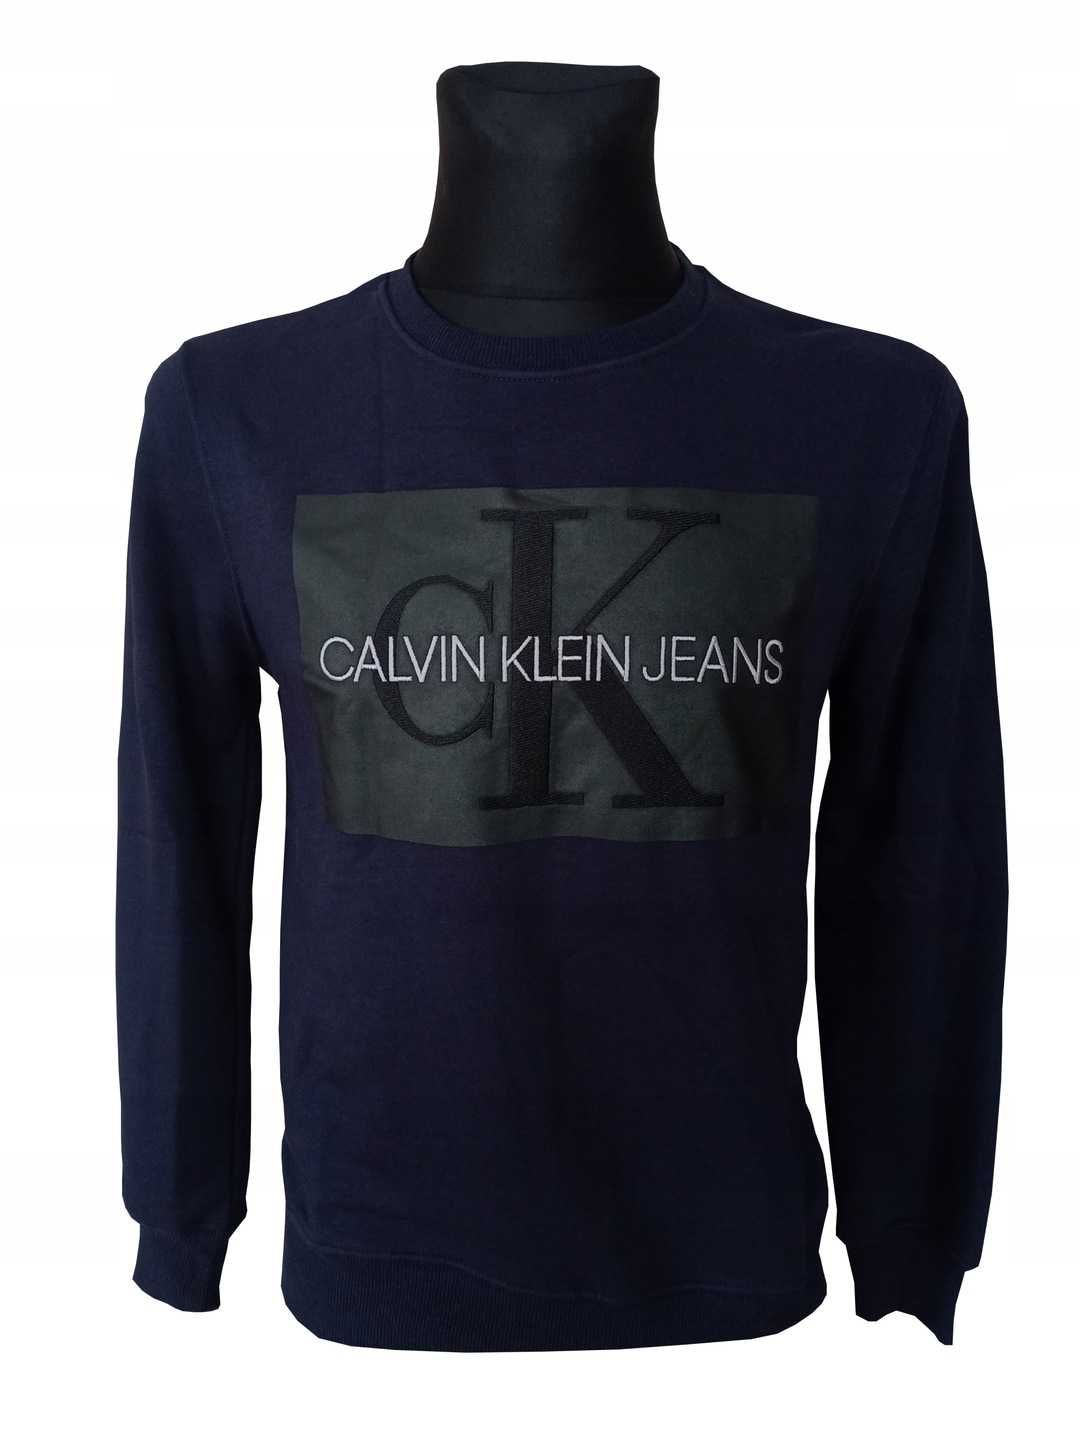 Bluza męska Calvin Klein wyszywana nowa xxl